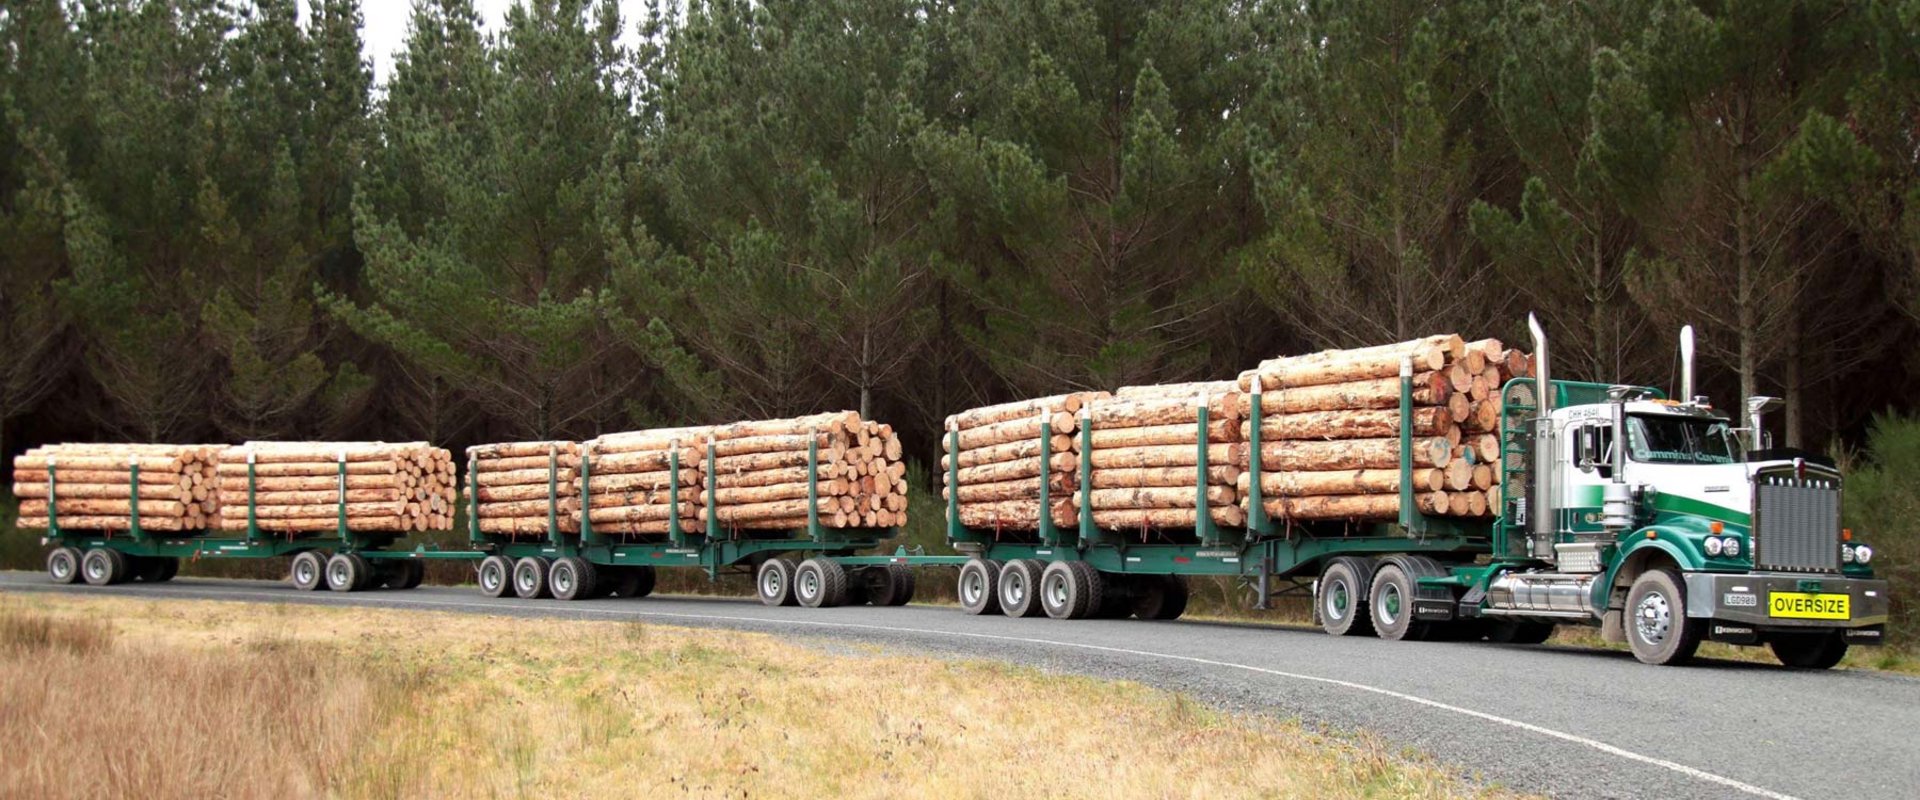 Holztransport der Superlative